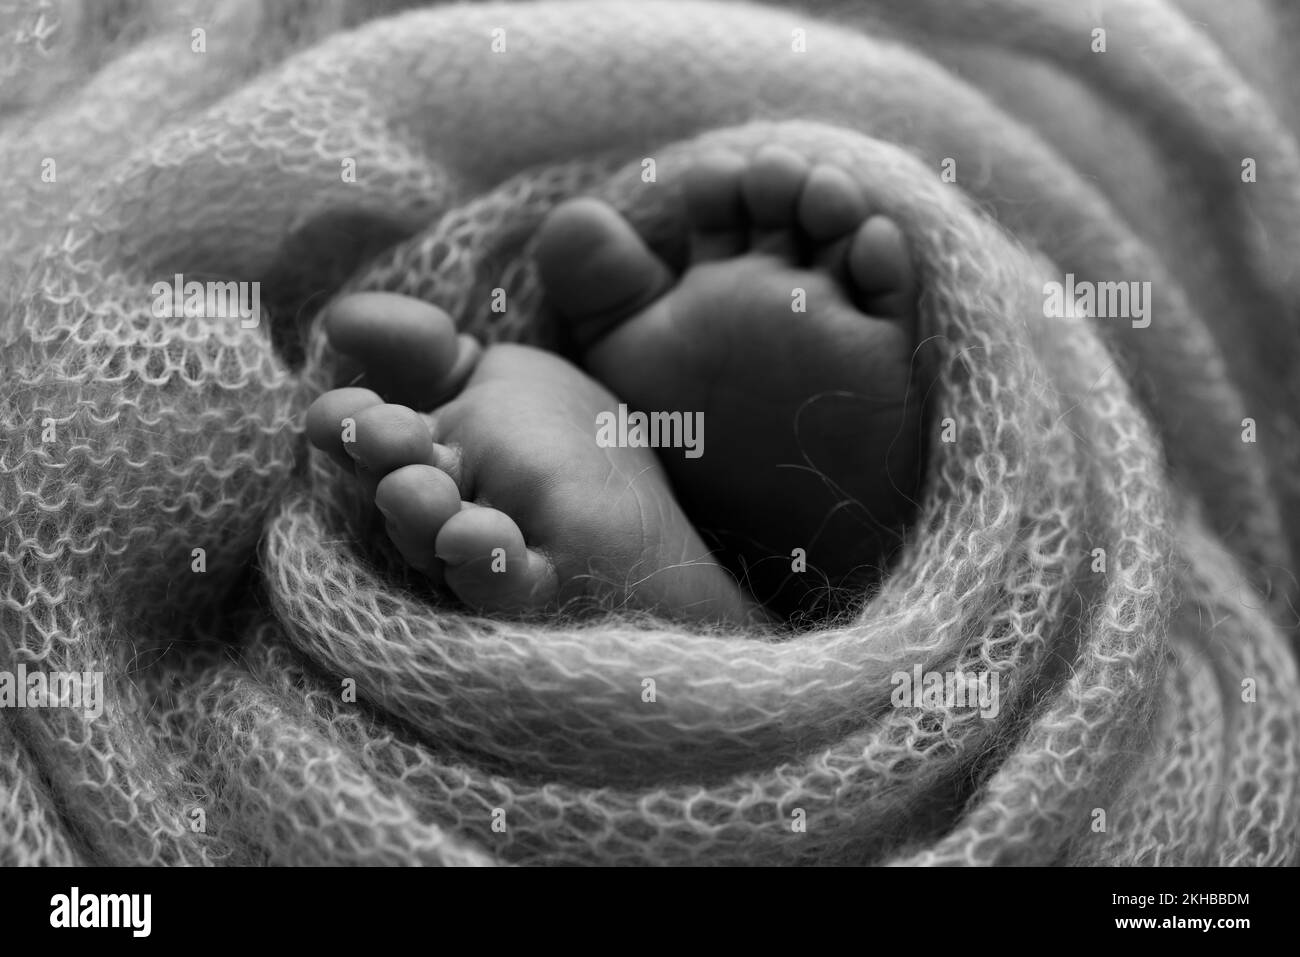 Morbidi piedi di un neonato in una coperta di lana. Fotografia macro in bianco e nero. Foto Stock